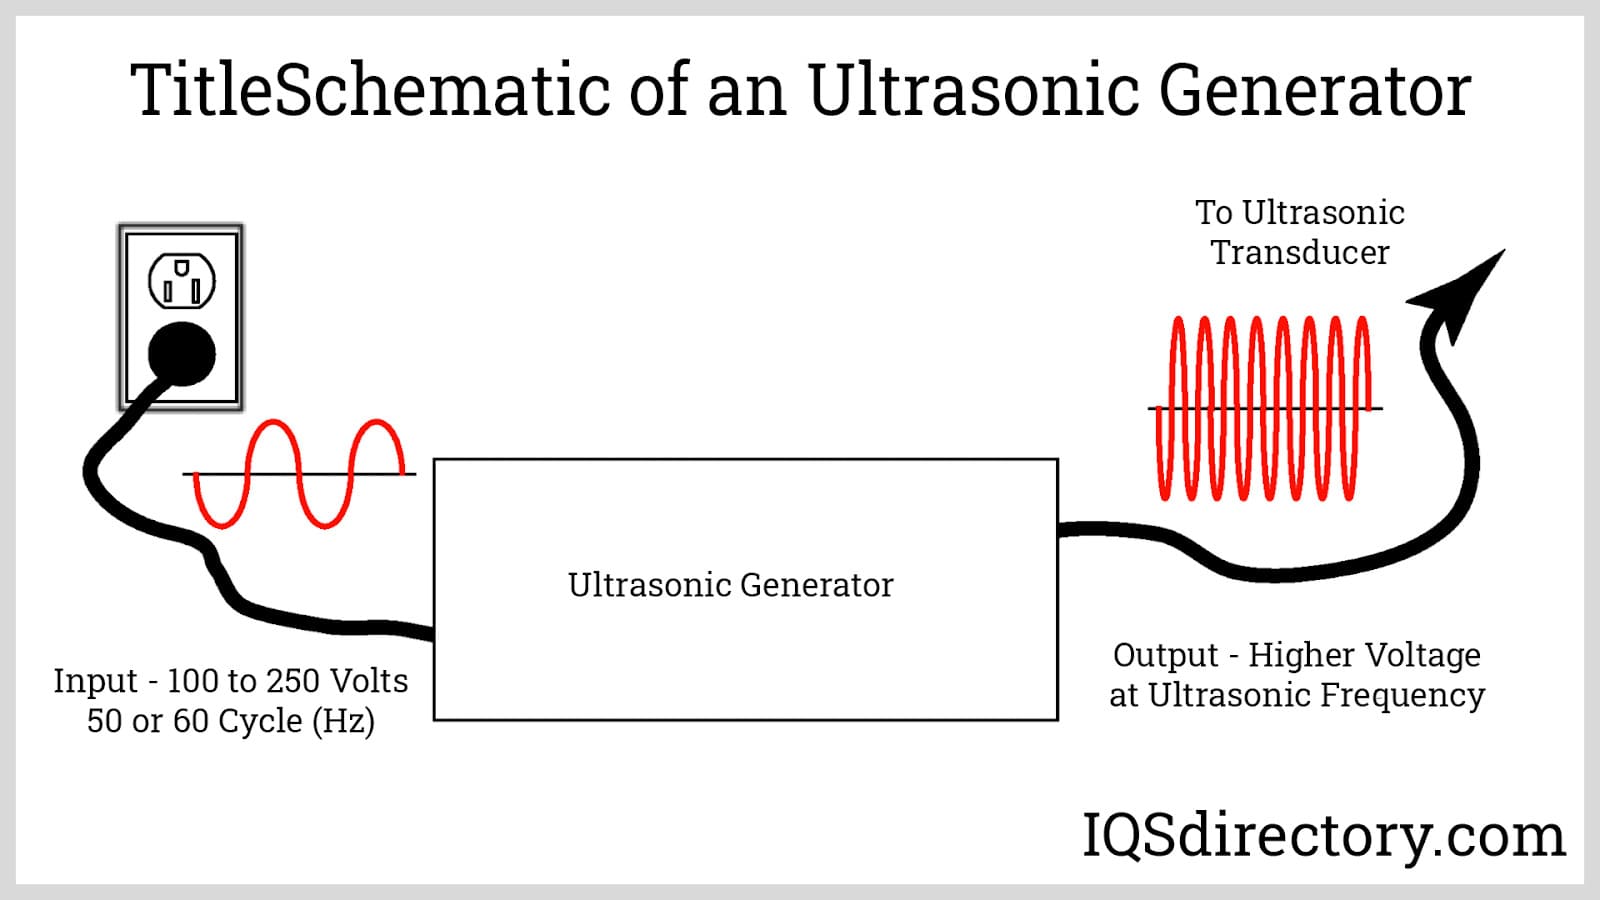 TitleSchematic of an Ultrasonic Generator